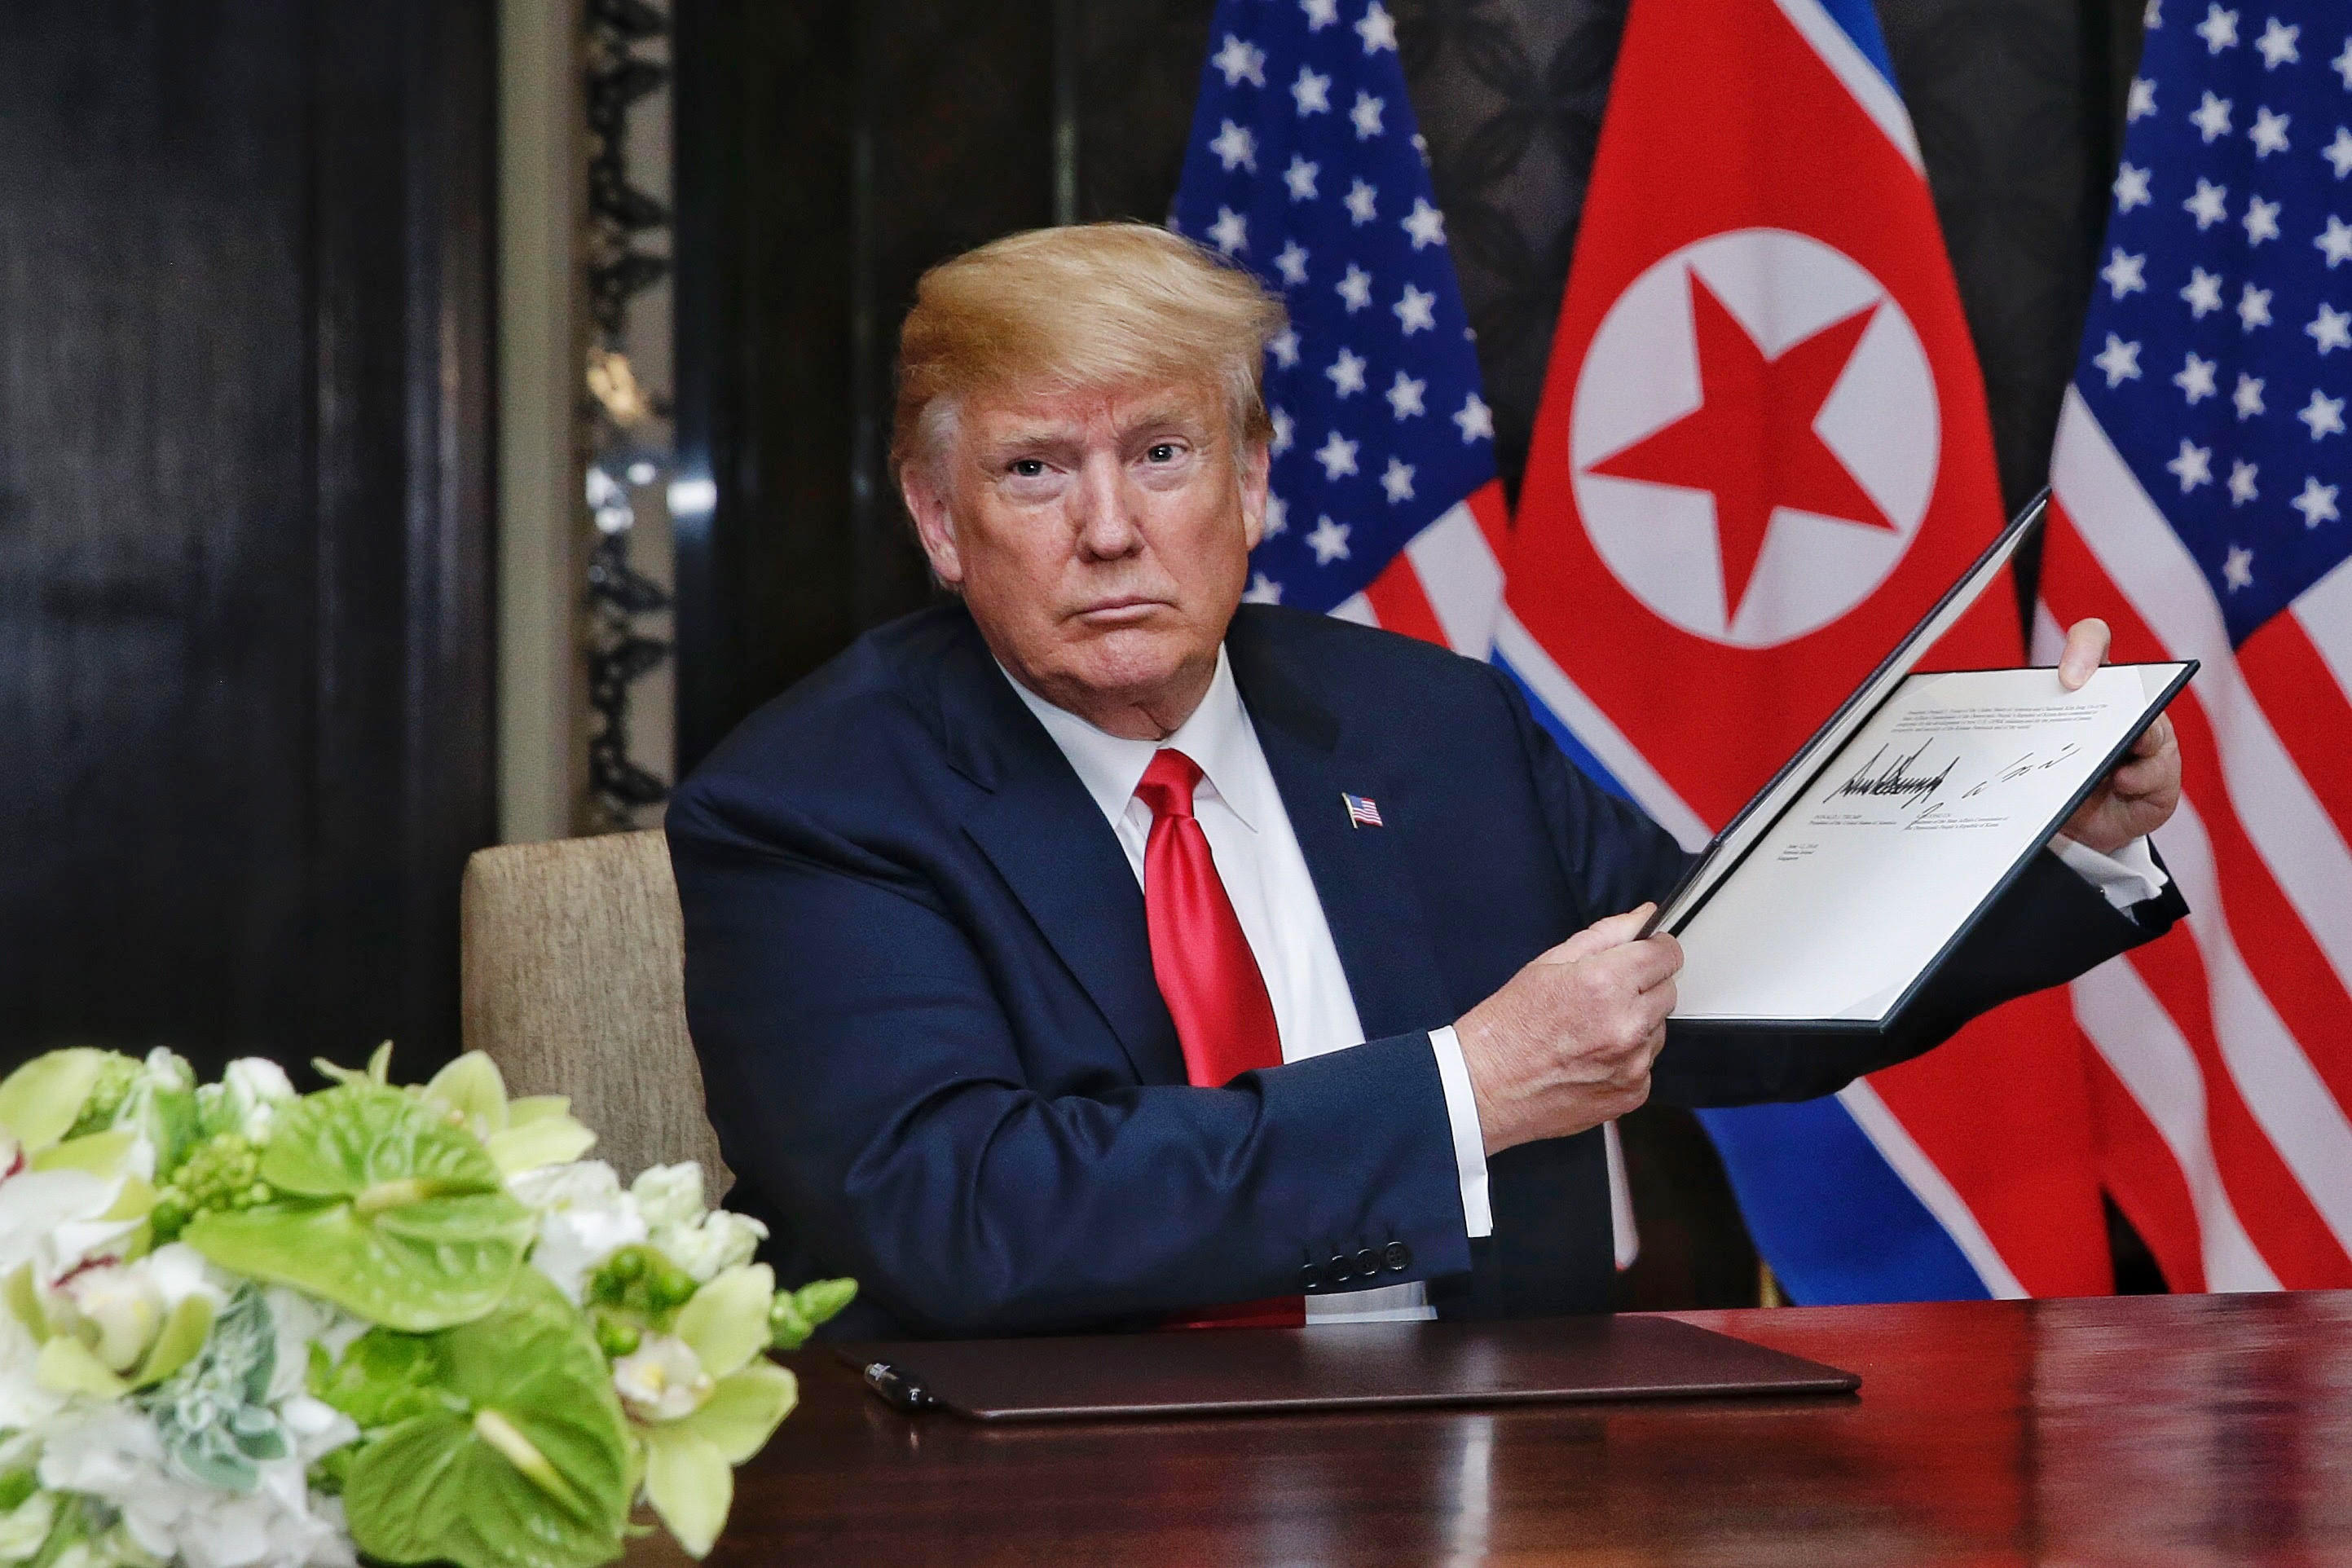 Kim North Korea Porn - North Korea summit agreement: Here's what Trump and Kim Jong ...